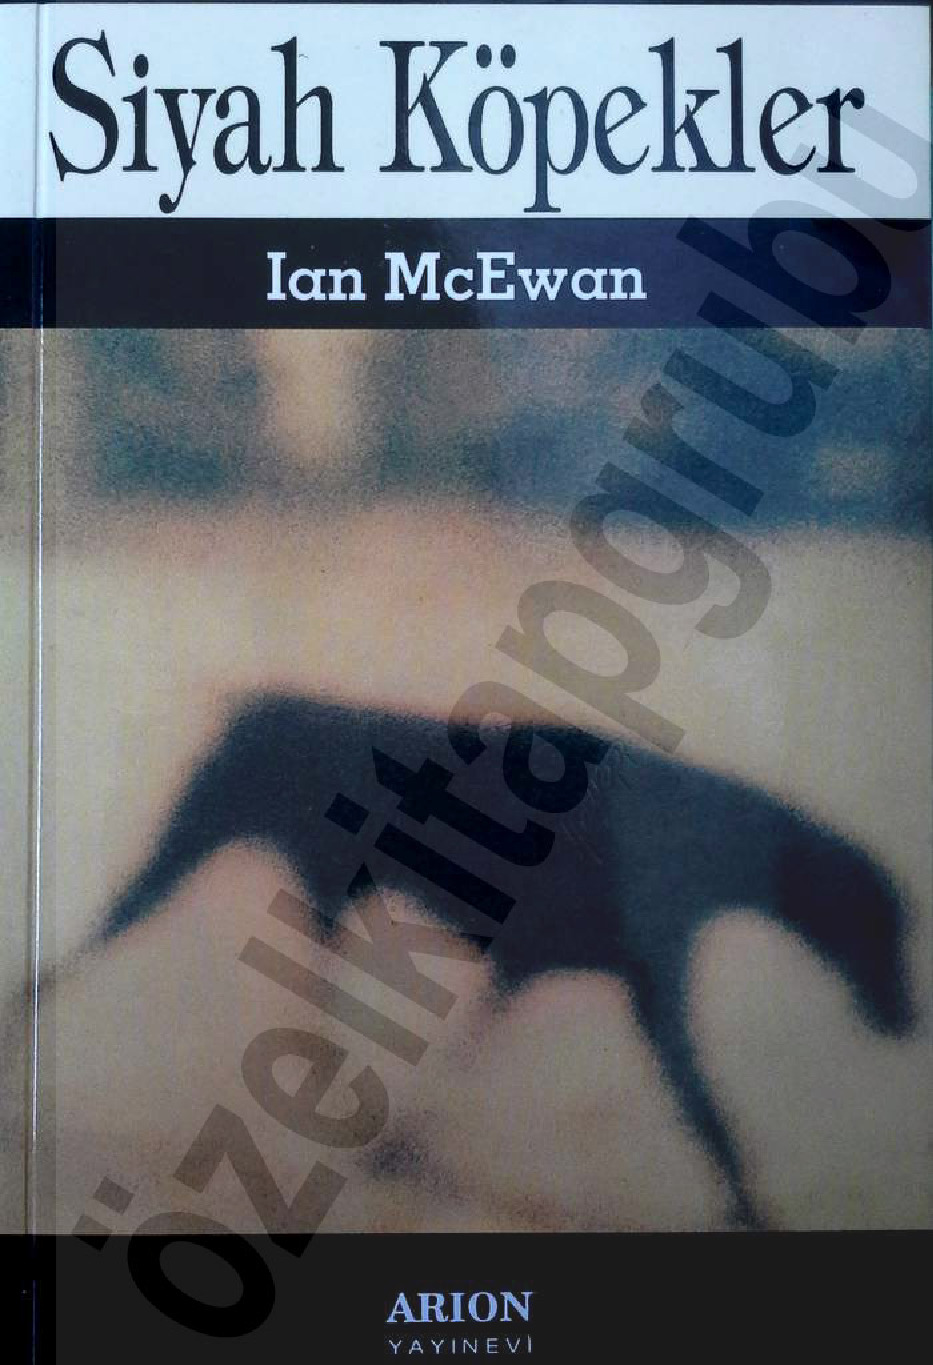 Siyah Köpekler-Ian Mcewan-Nejla özgur-1995-174s